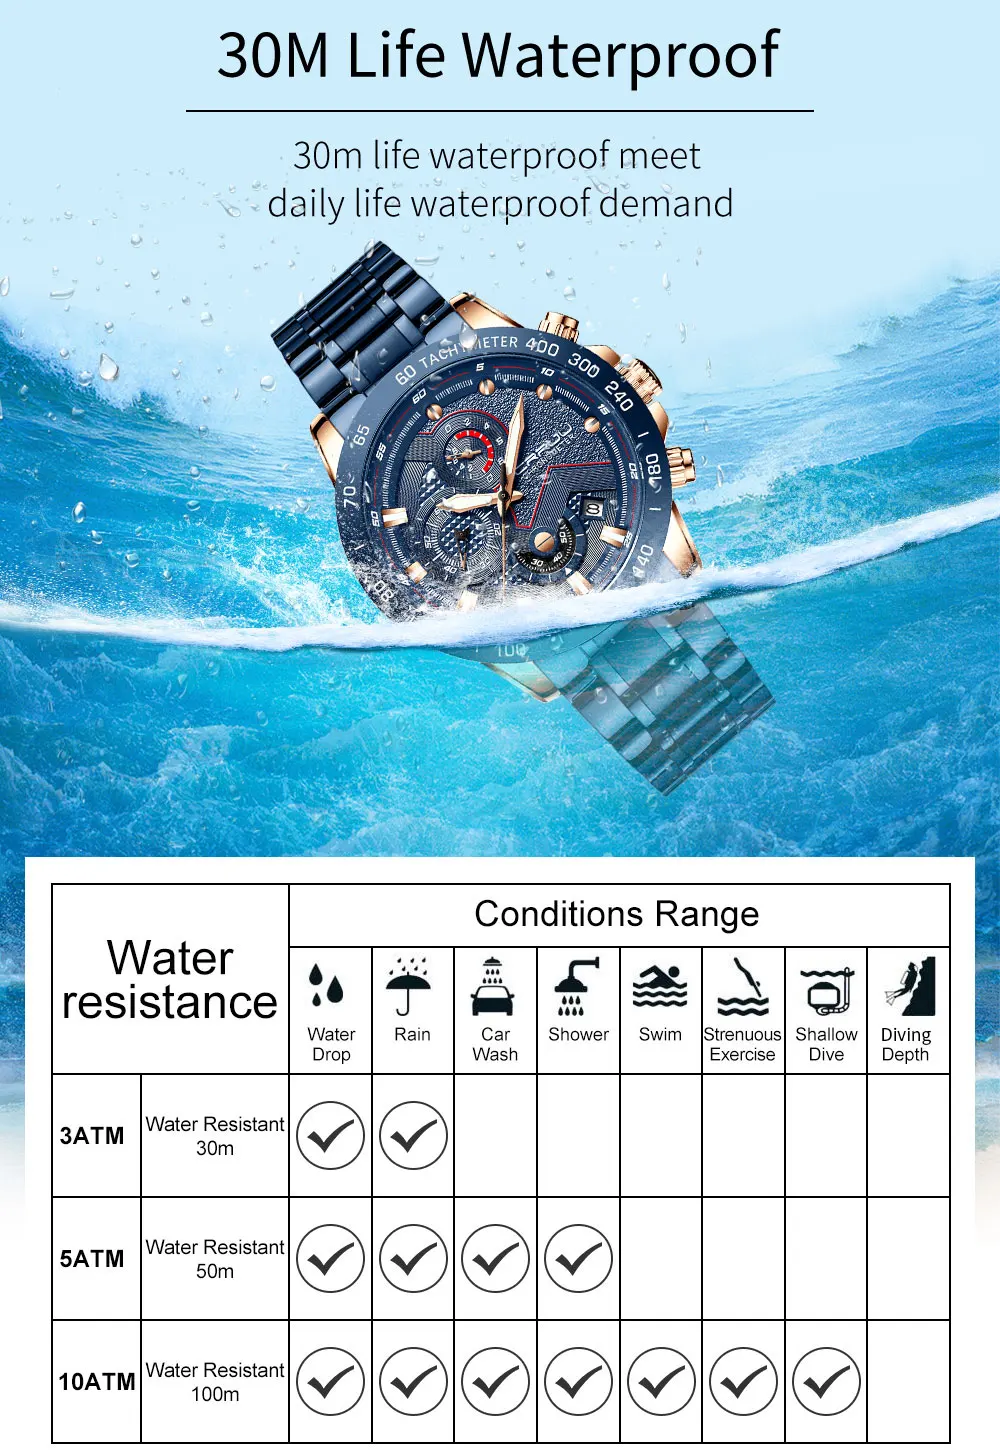 CRRJU осень и зима дизайн стальной ремень мужские часы, военные передовые водонепроницаемые часы, три циферблата кварцевые мужские часы